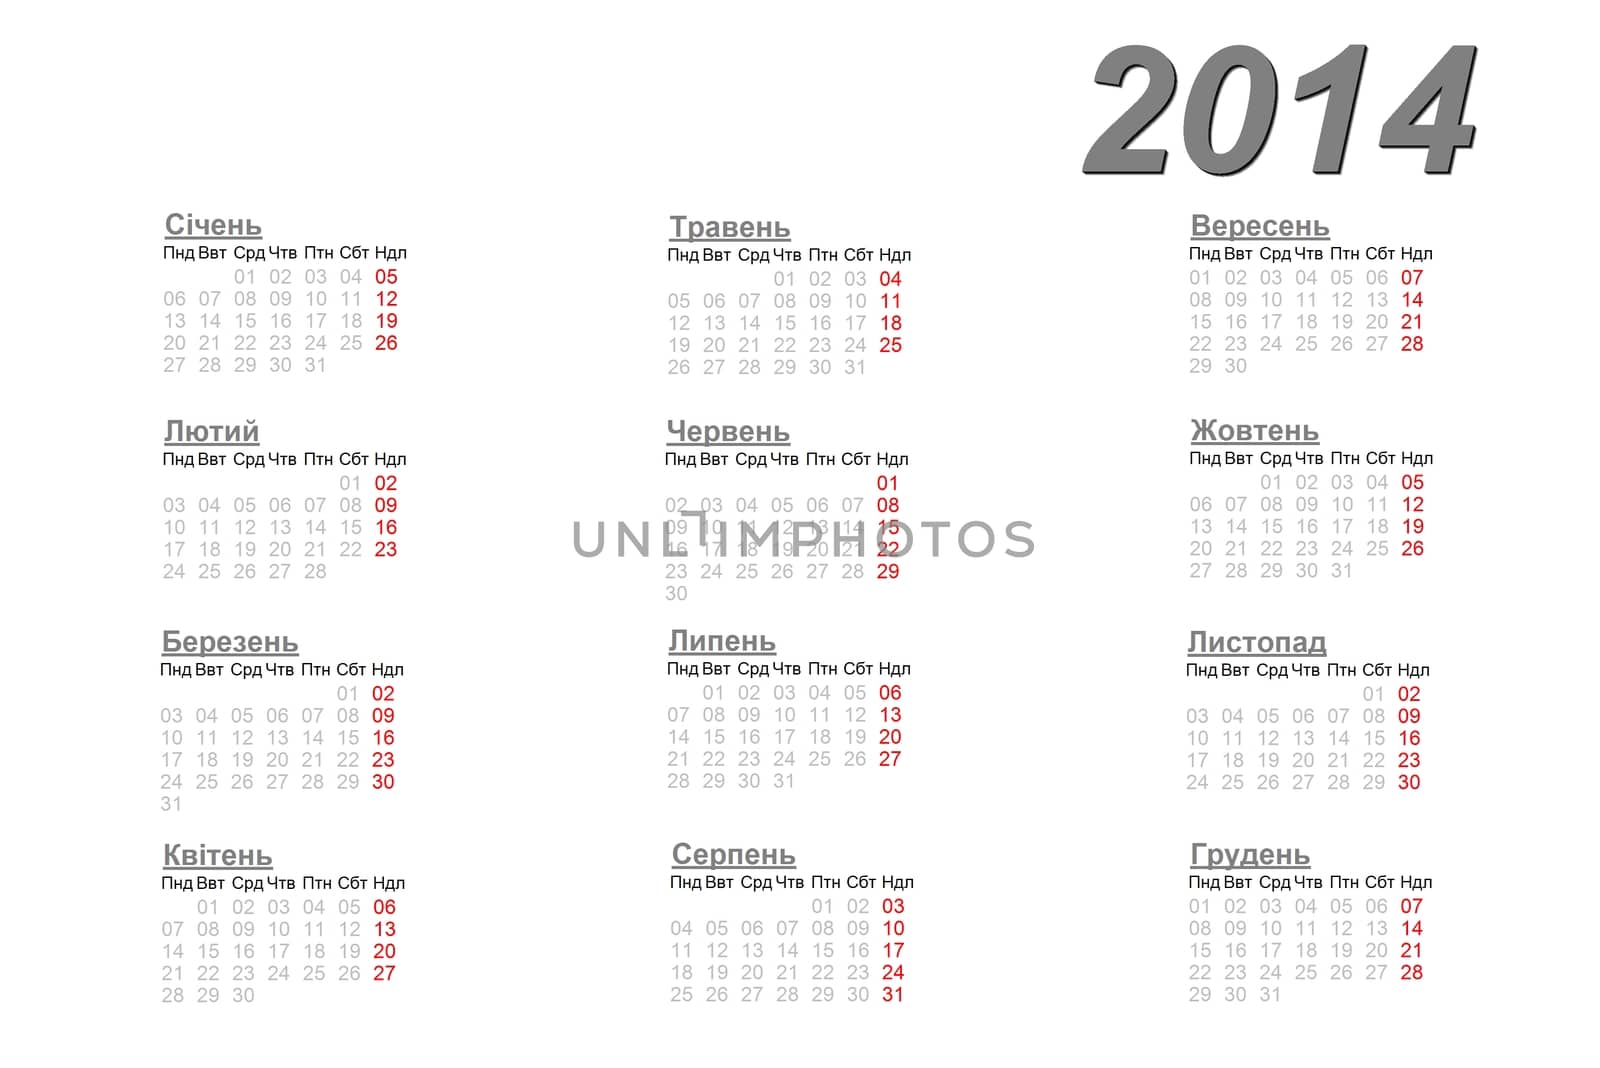 Ukrainian calendar for 2014 on white background